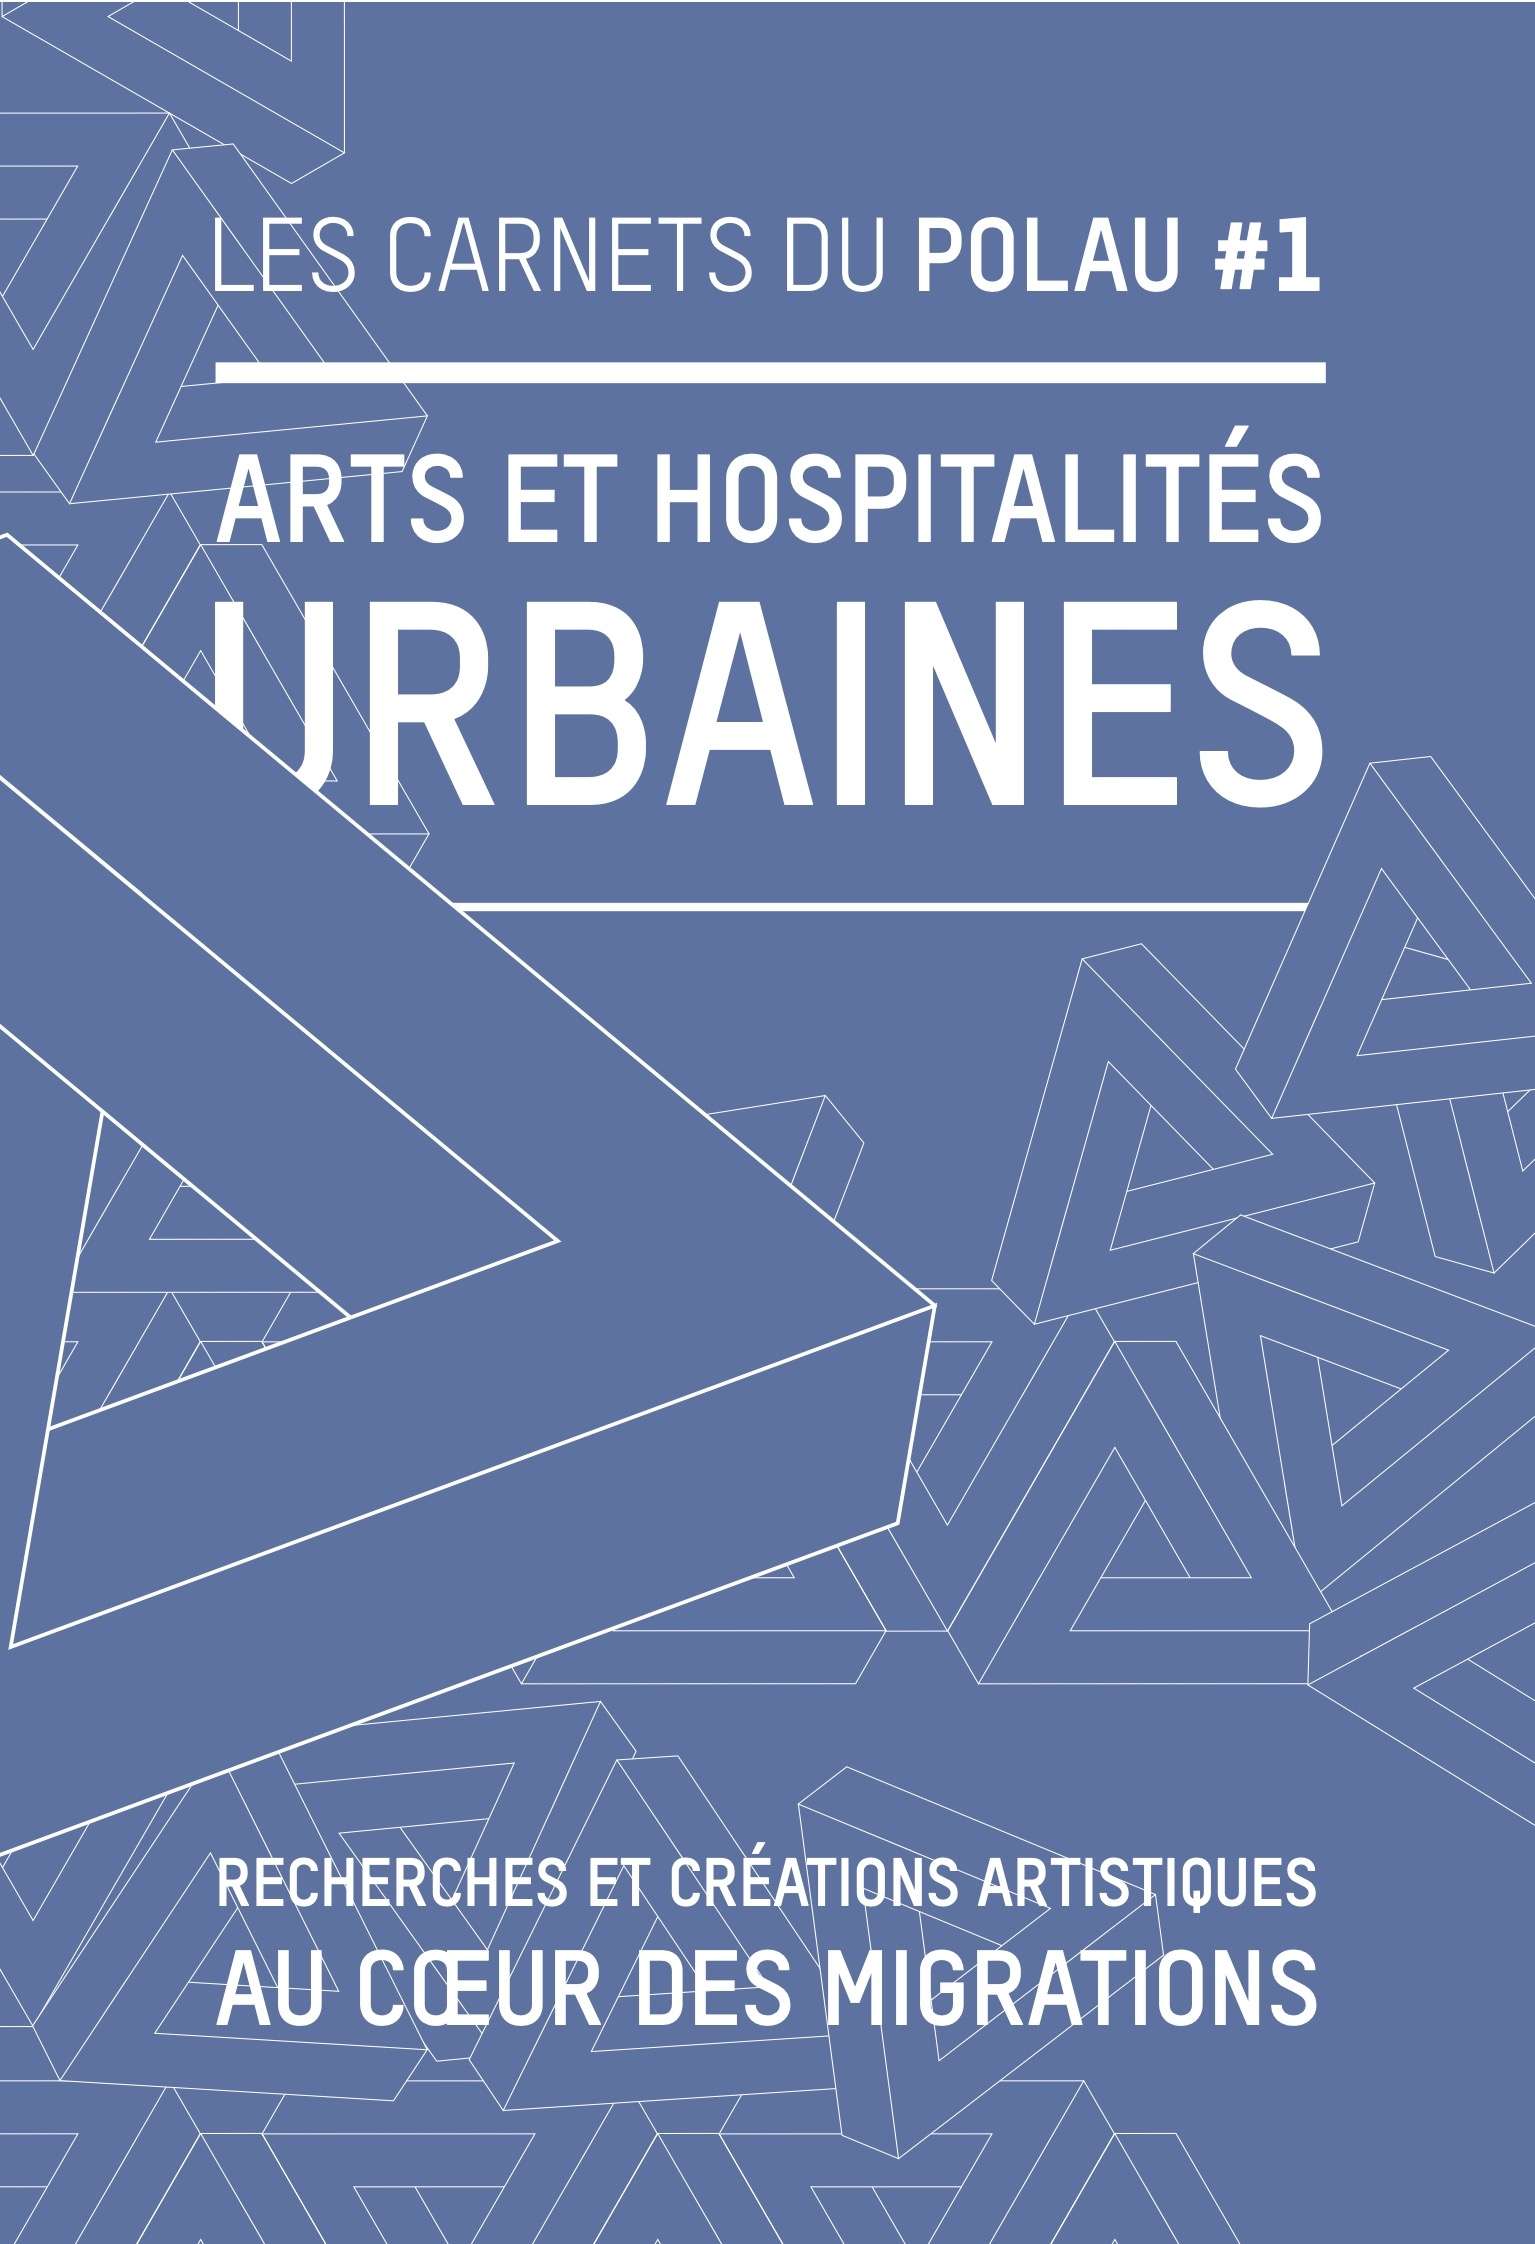 1_carnet_arts_et_hospitalites_urbaines.jpg